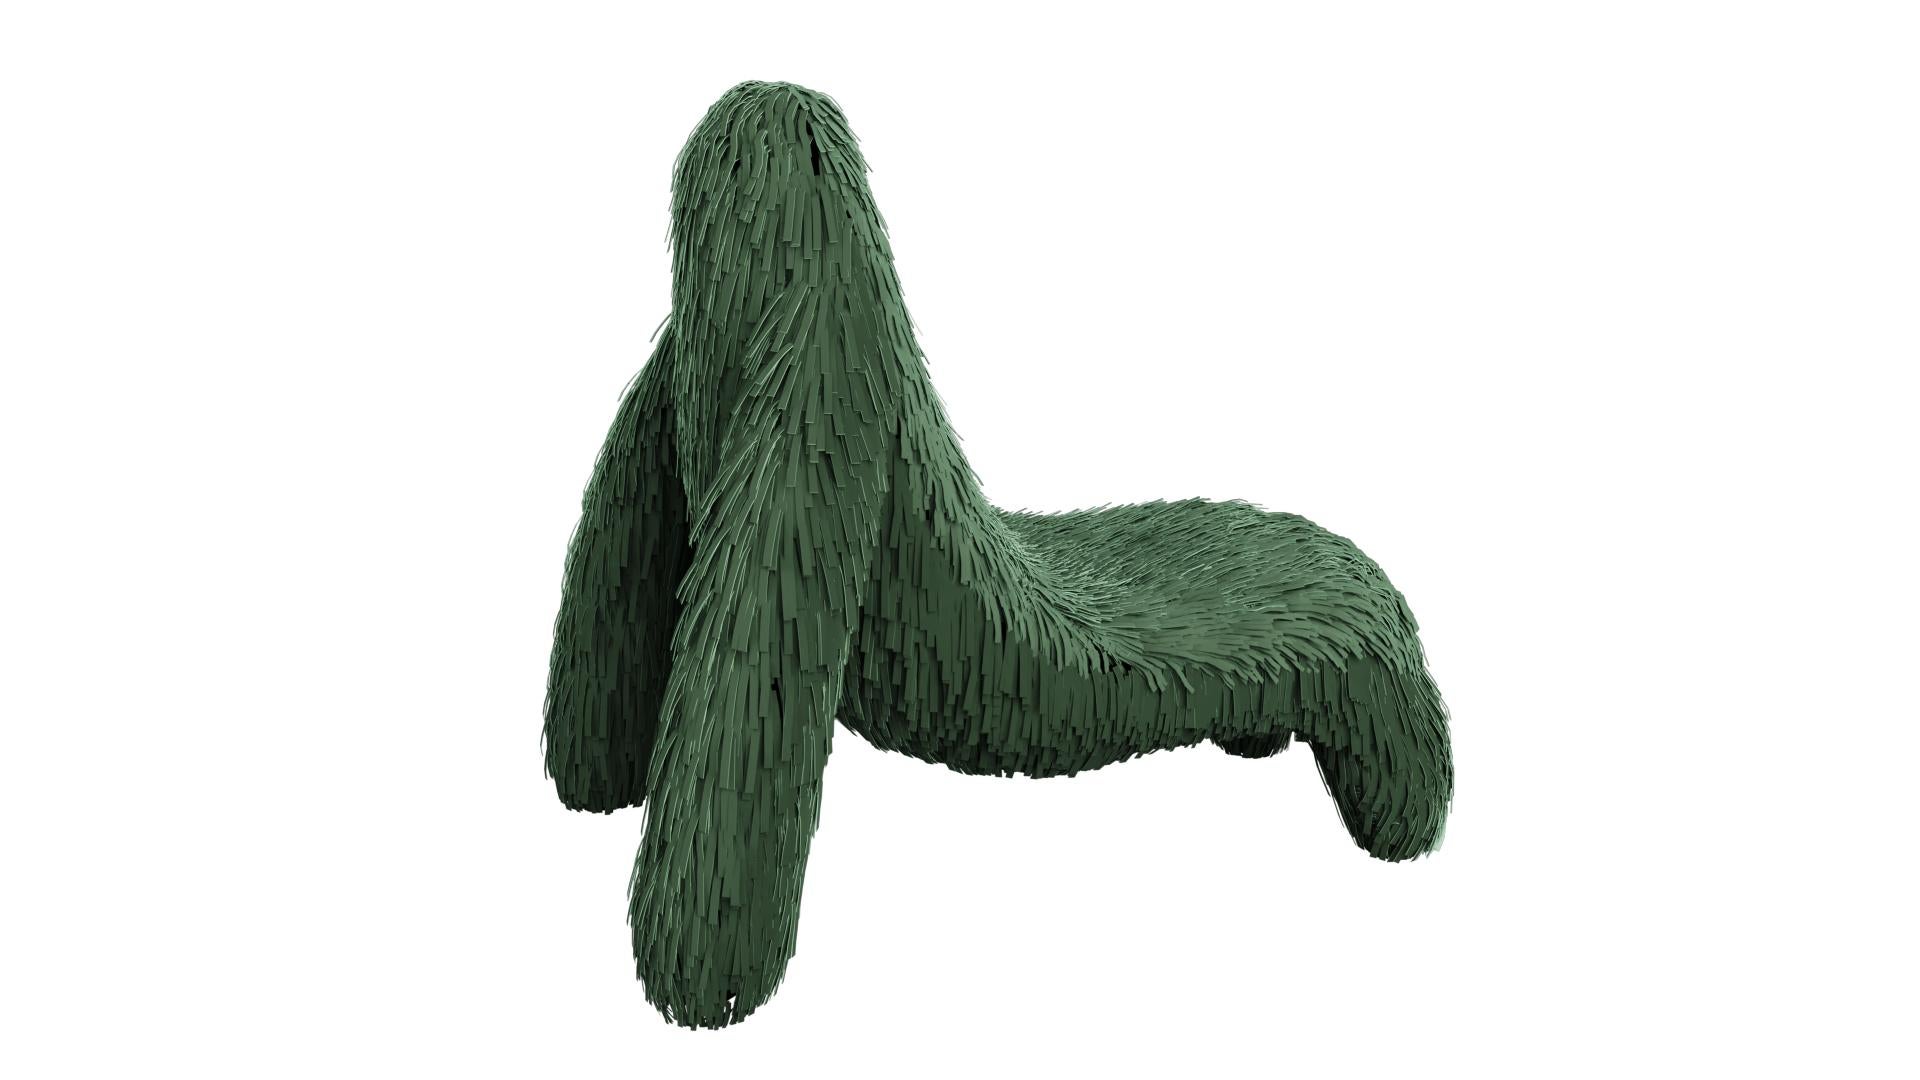 La chaise Gorilla avec cuir vert véritable de Marcantonio est un siège en forme de singe avec un revêtement en cuir vert riche. Une chaise longue avec une forme fantastique et unique.

Pour ses premières créations, Marcantonio a présenté 